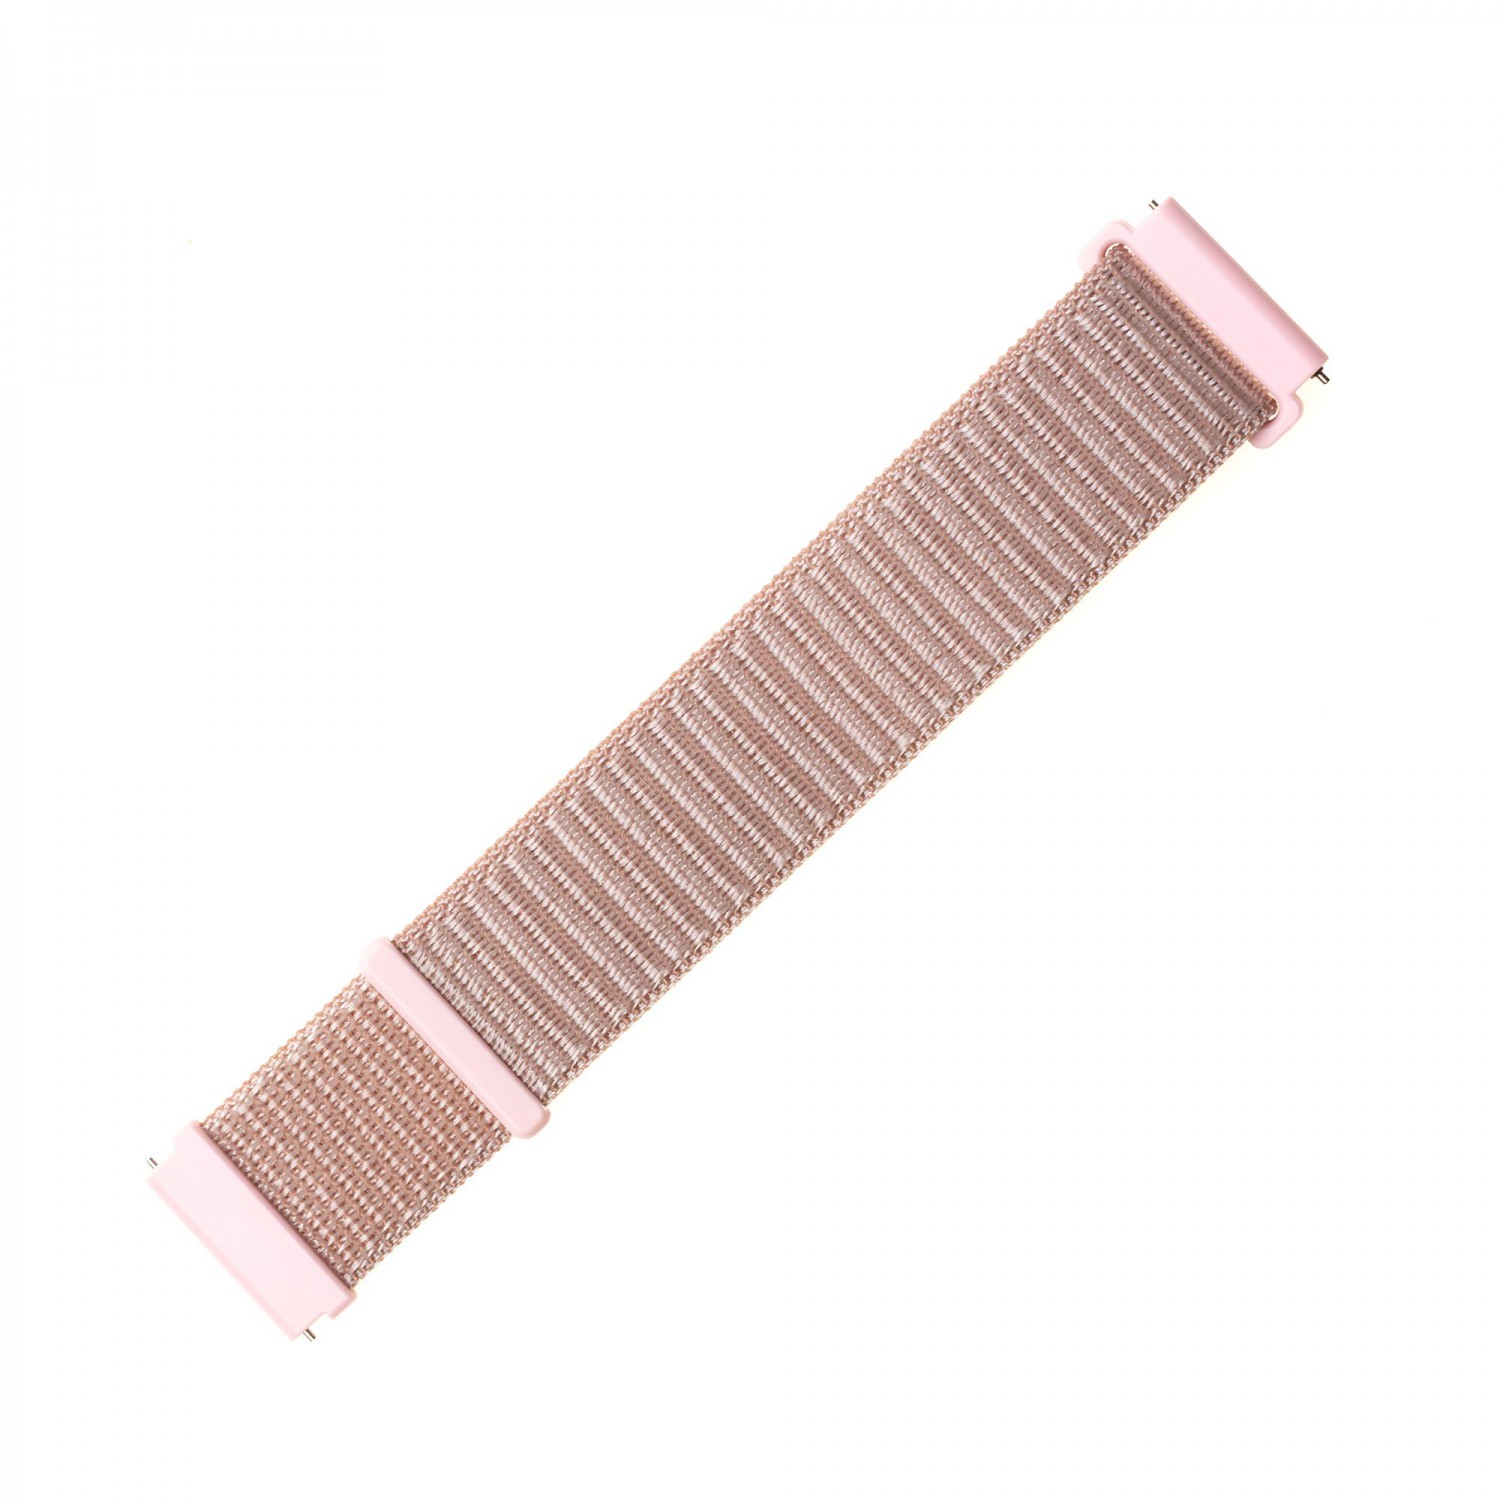 Nylonový řemínek FIXED Nylon Strap pro smartwatch, šířka 22mm, růžová/zlatá